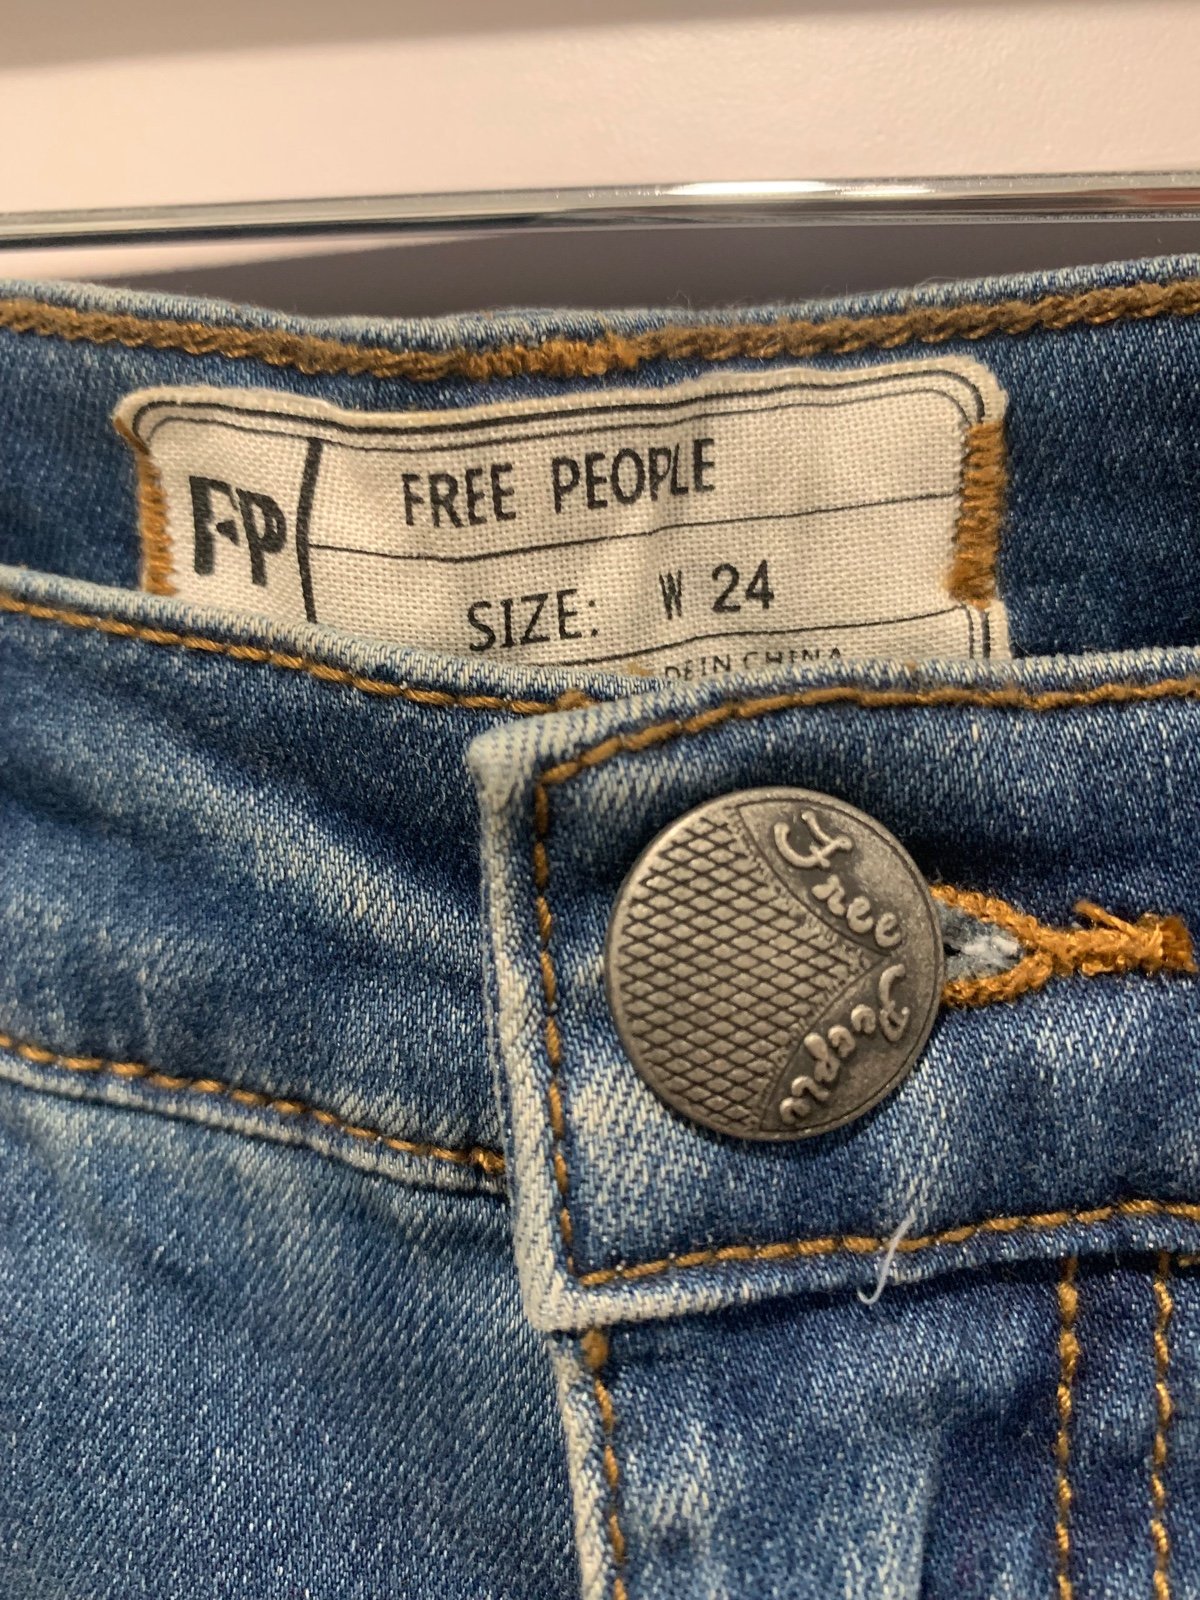 Amazing Free People Jeans gJAl5seMx Novel 